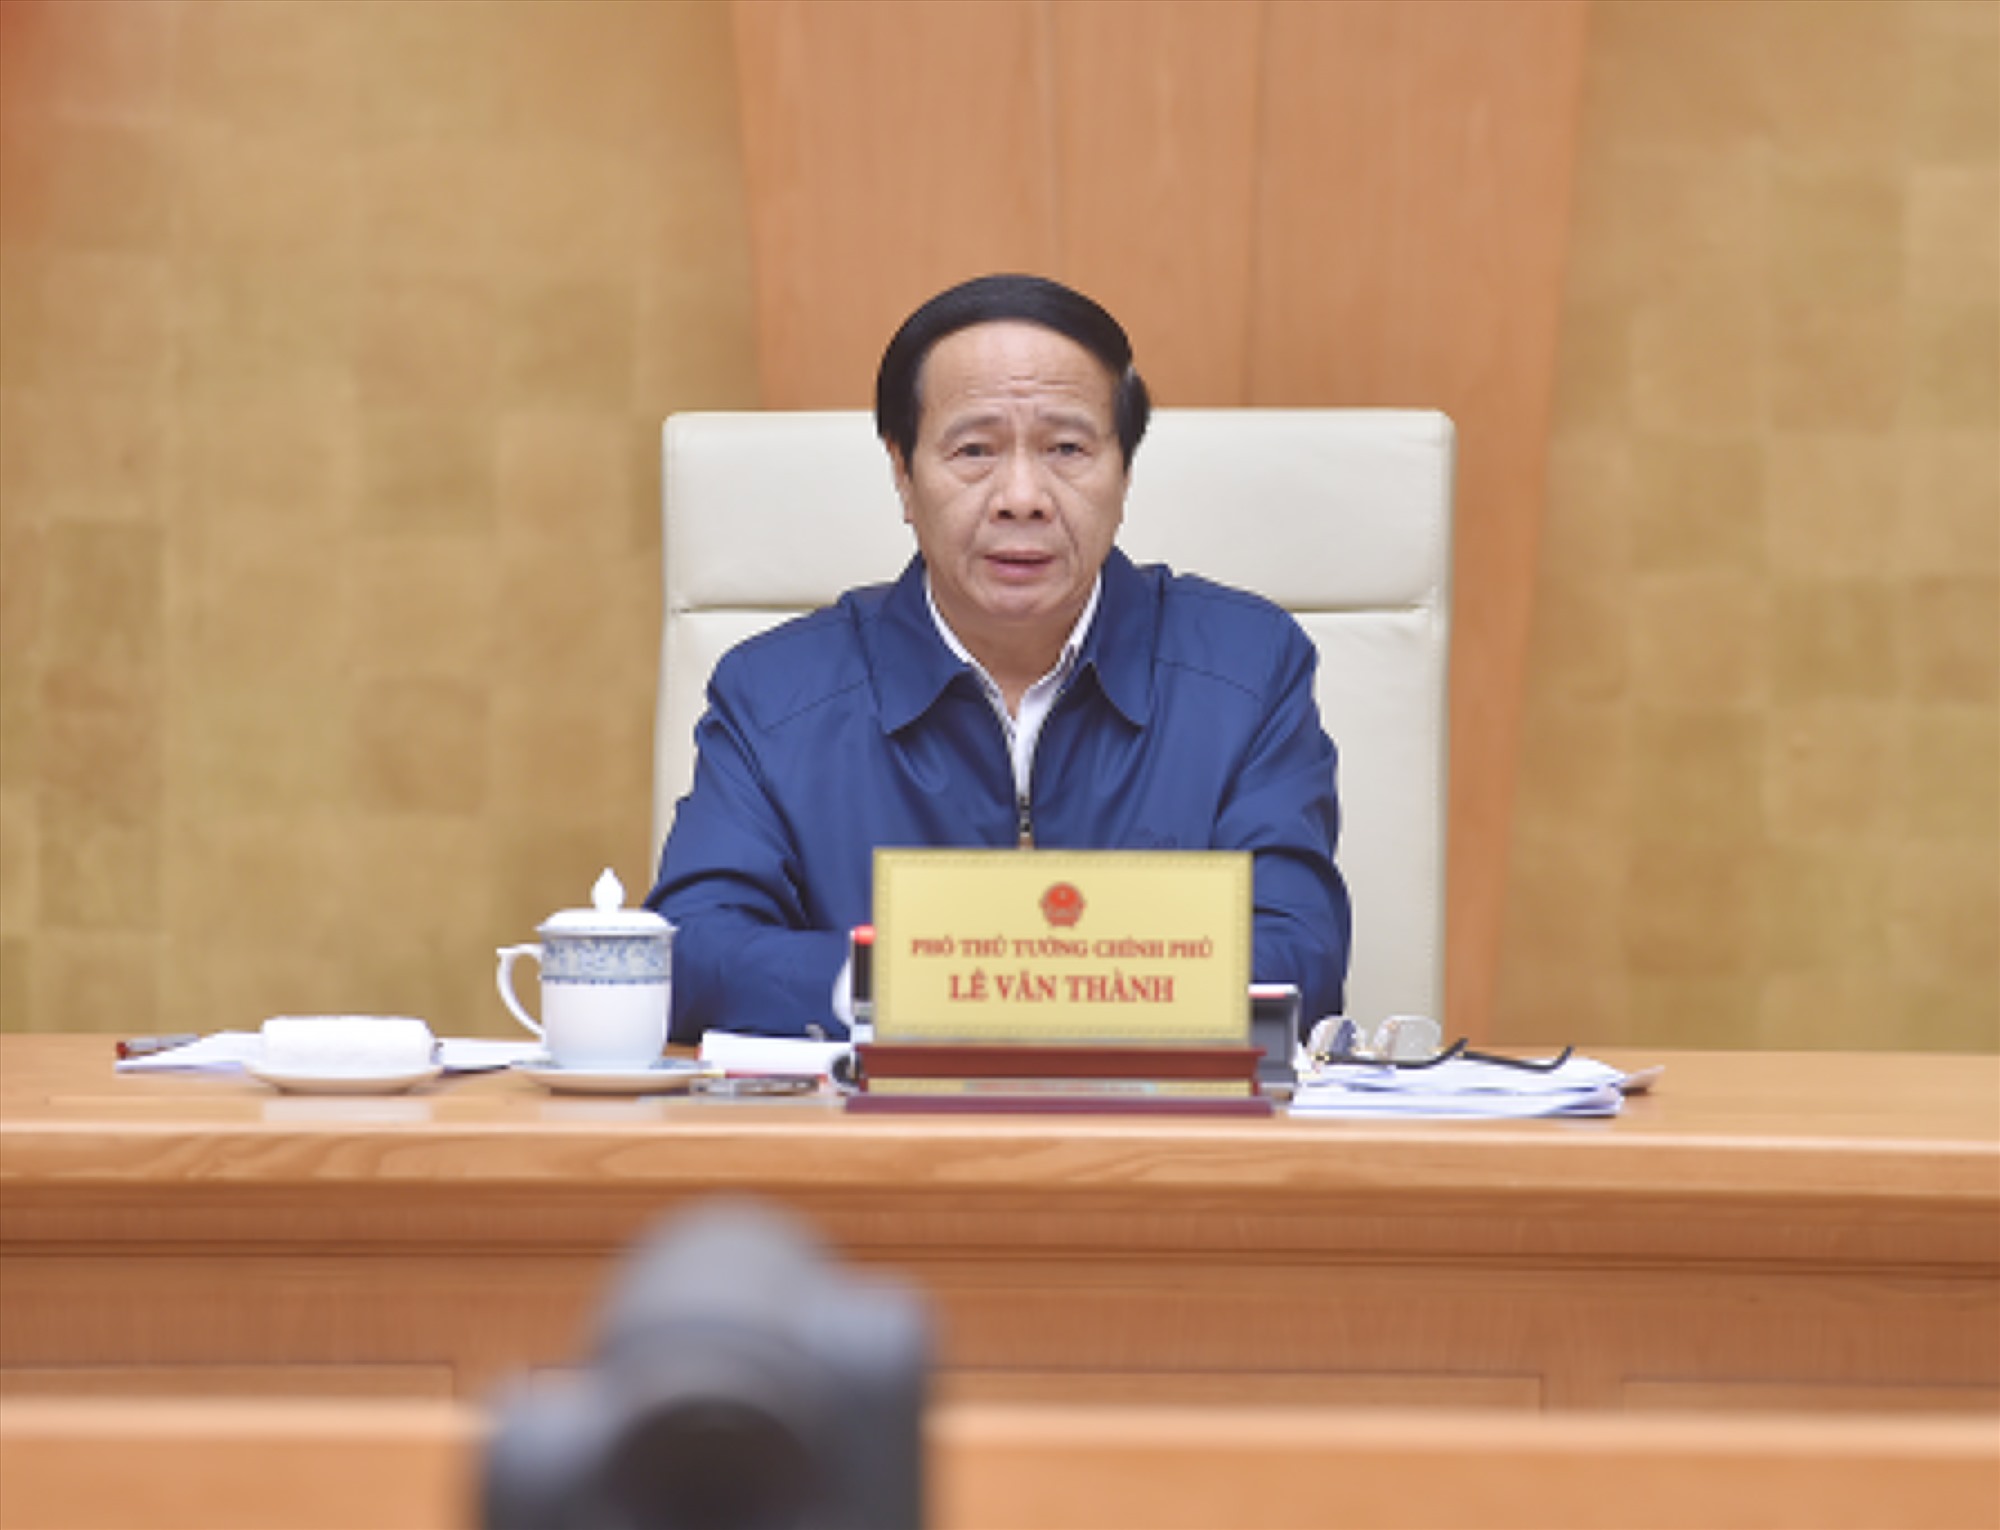 Phó Thủ tướng Lê Văn Thành: Dứt khoát phải khánh thành công trình Sân bay Long Thành vào năm 2025 - Ảnh: VGP/Đức Tuân